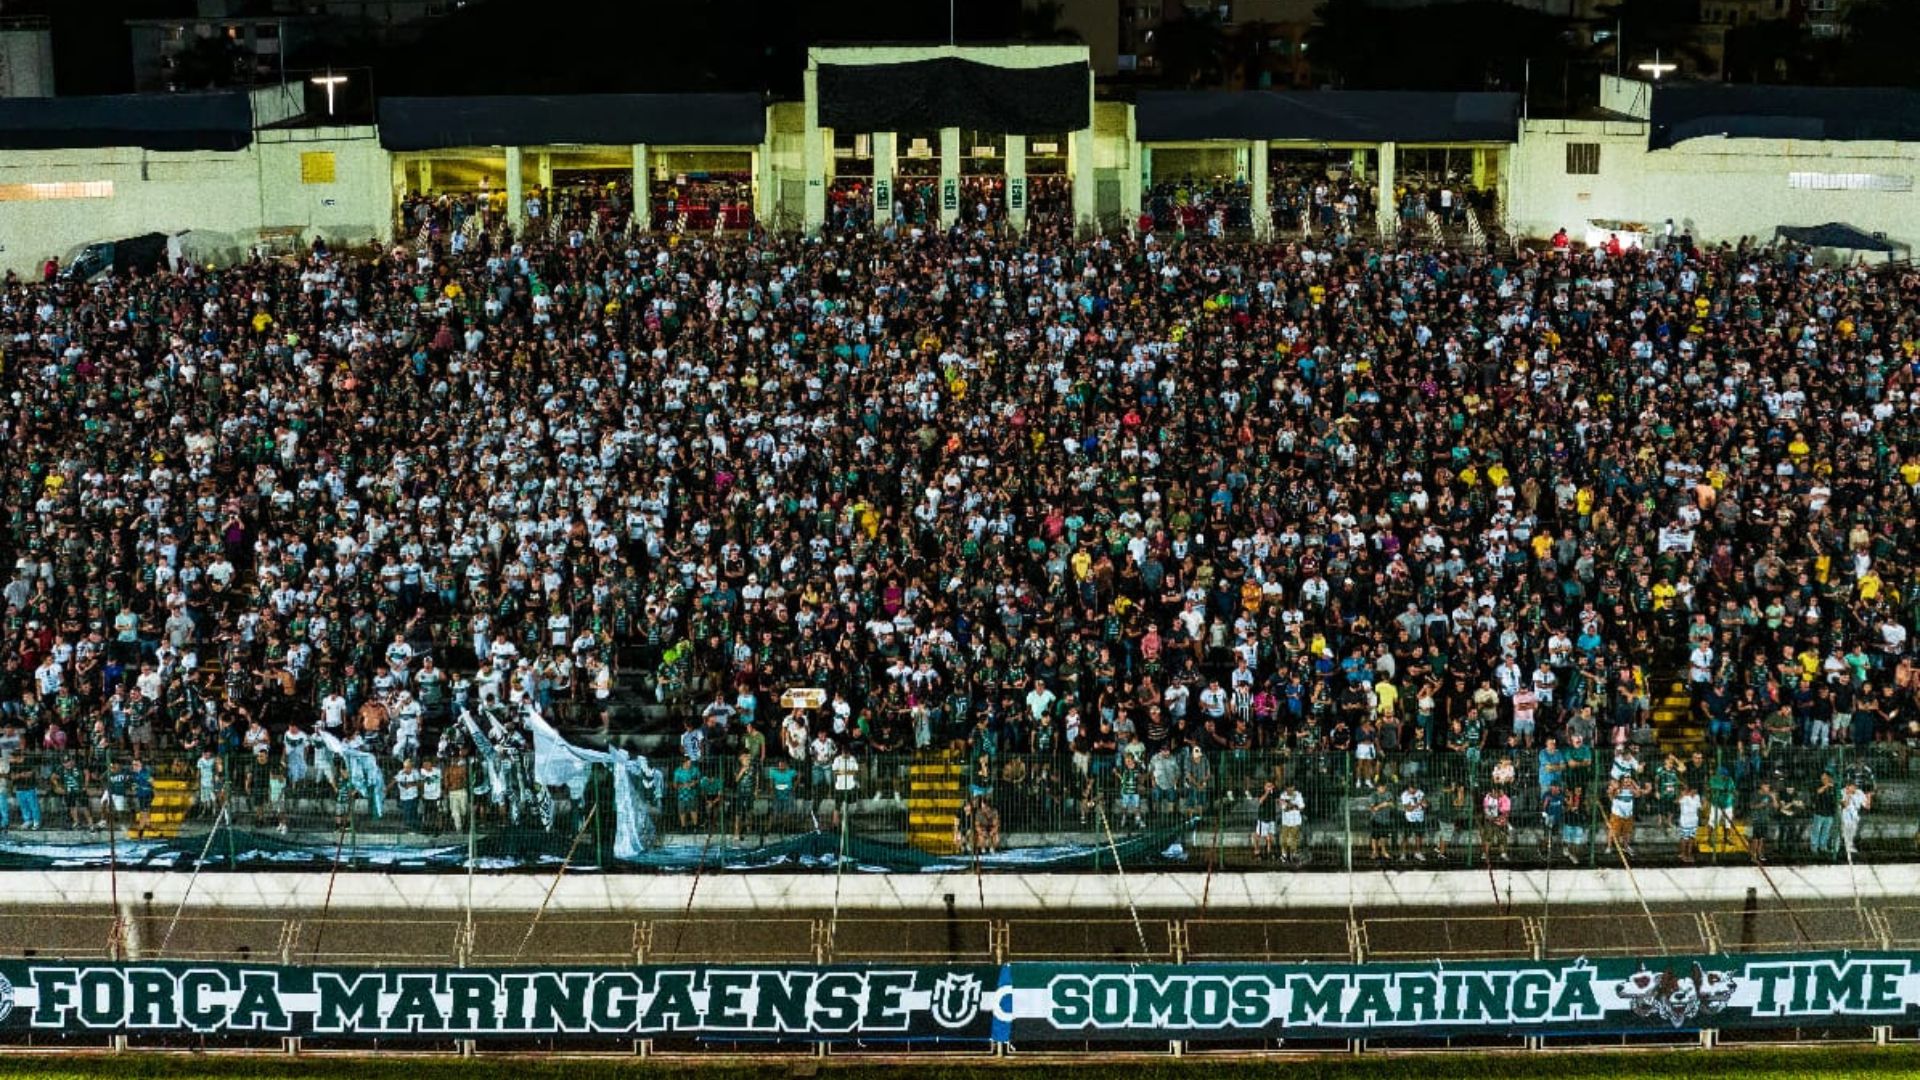 Maringá FC fans